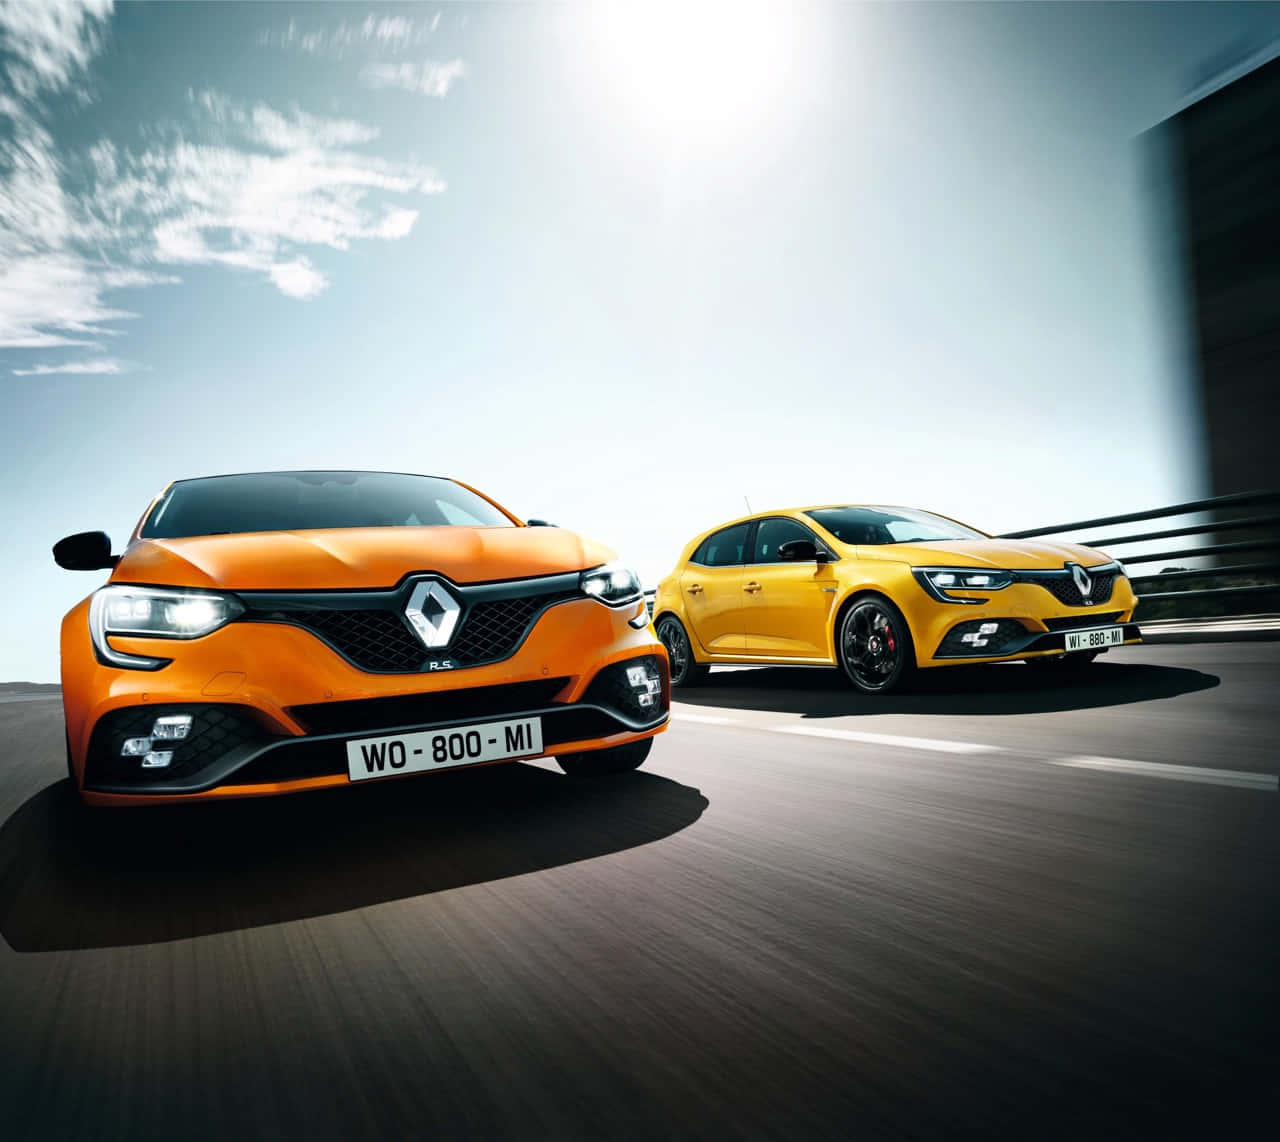 Caption: Sleek Renault Megane In Dynamic Landscape Wallpaper